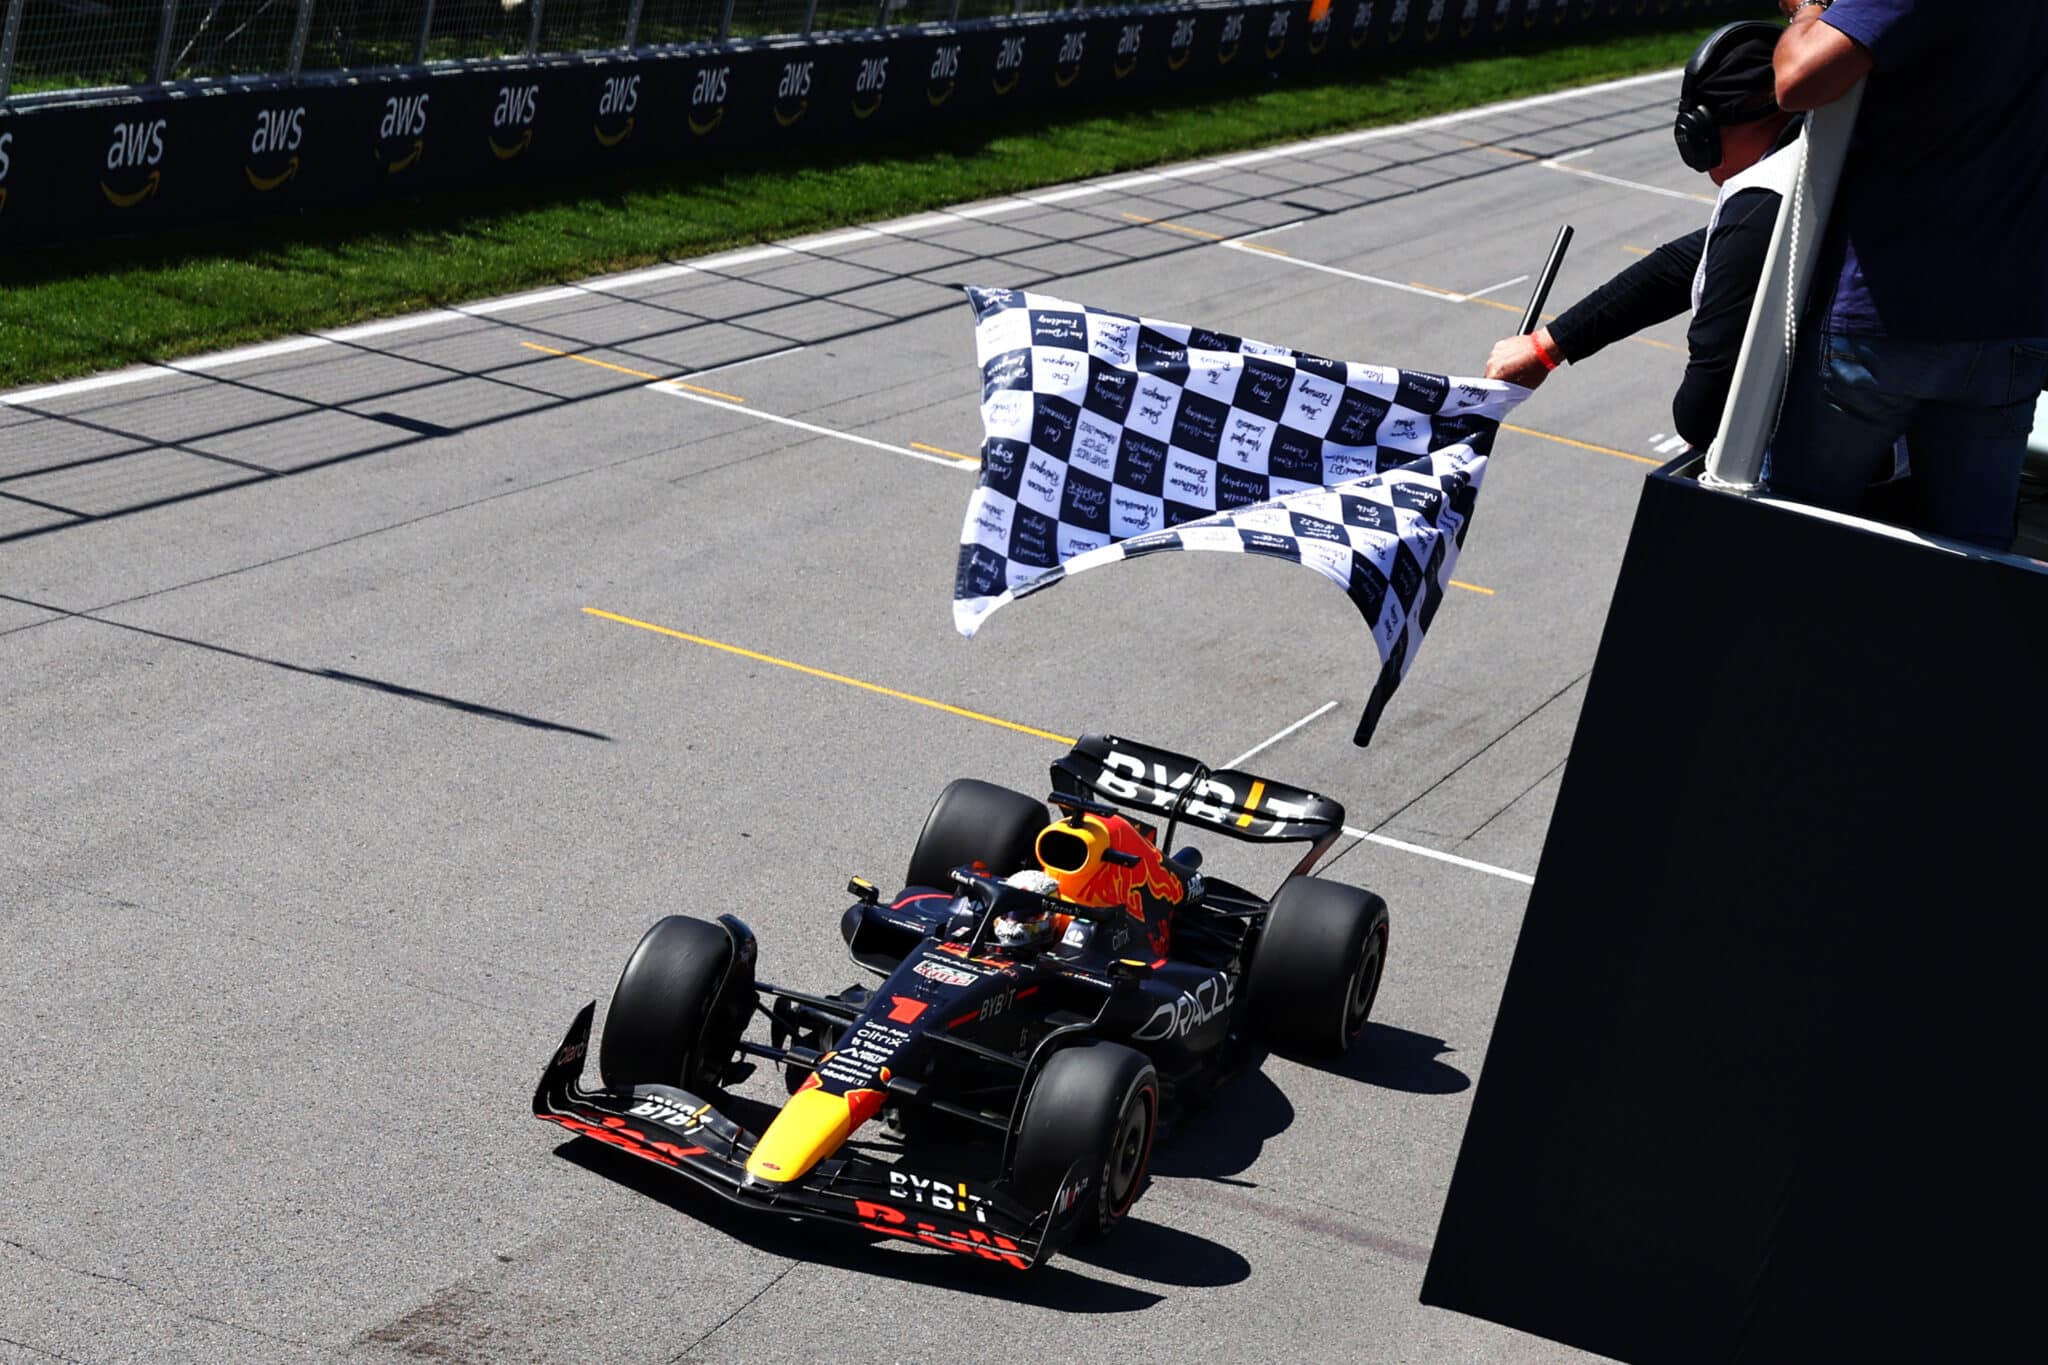 - Bandiera a scacchi in F1 Racing: la fine della gara e la vittoria